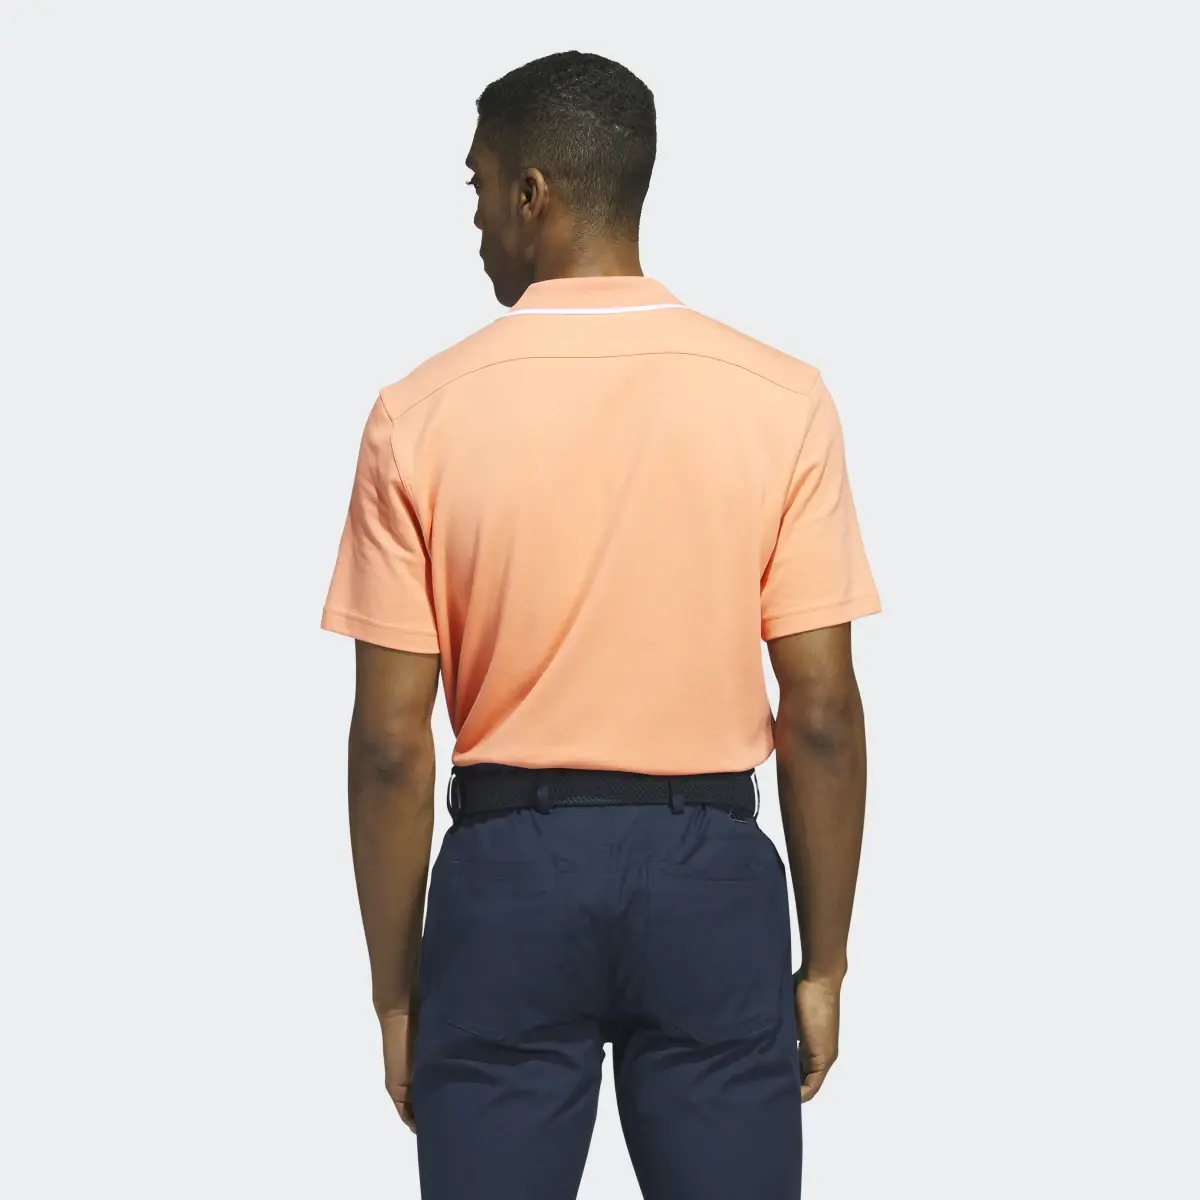 Adidas Go-To Piqué Golf Polo Shirt. 3